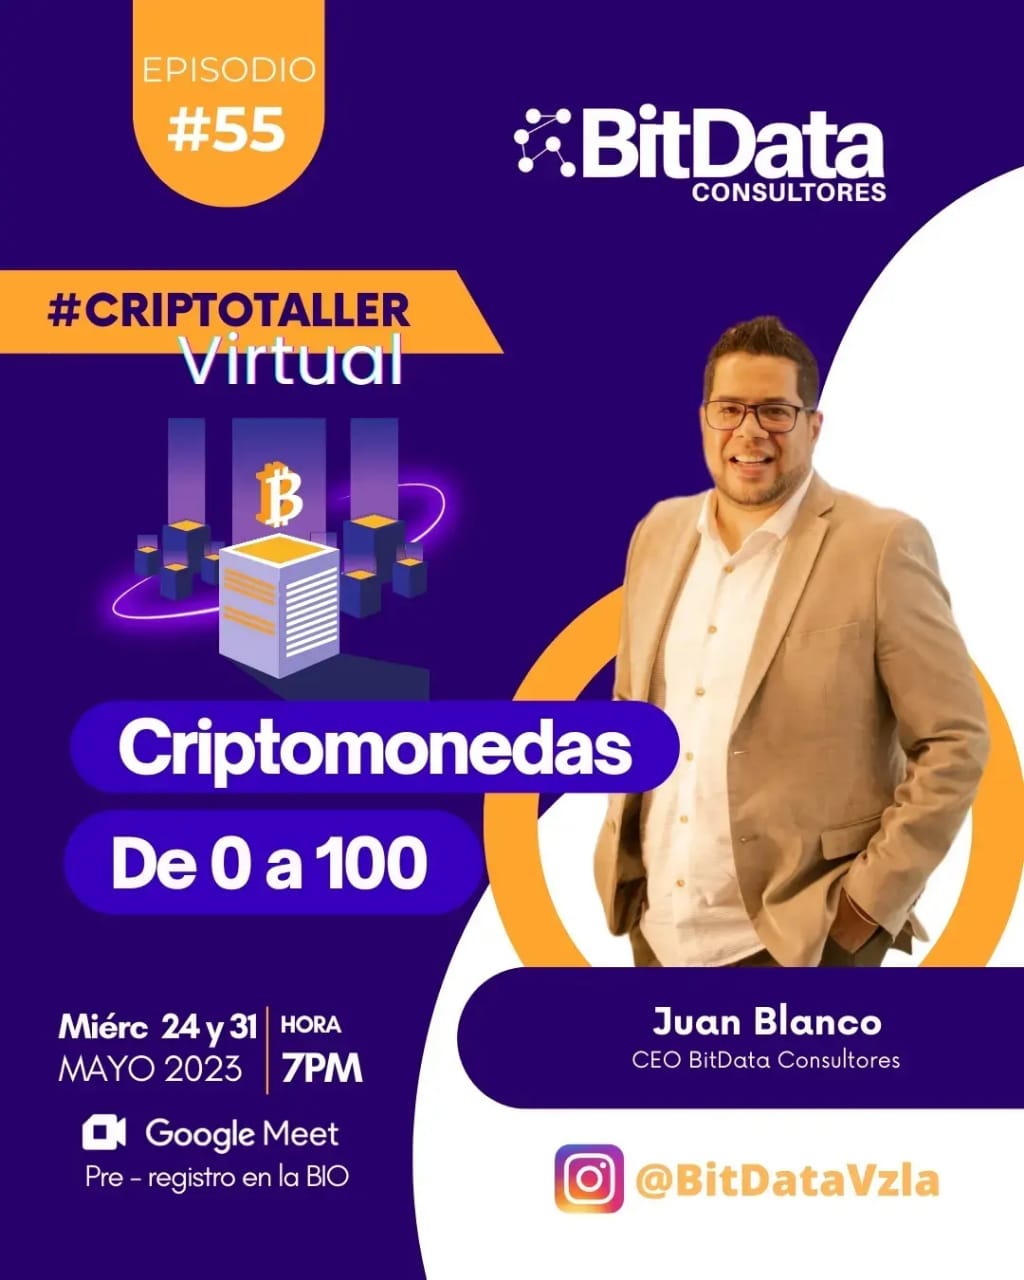 BitData dictará el taller virtual “Criptomonedas de 0 a 100” los miércoles 24 y 31 de mayo